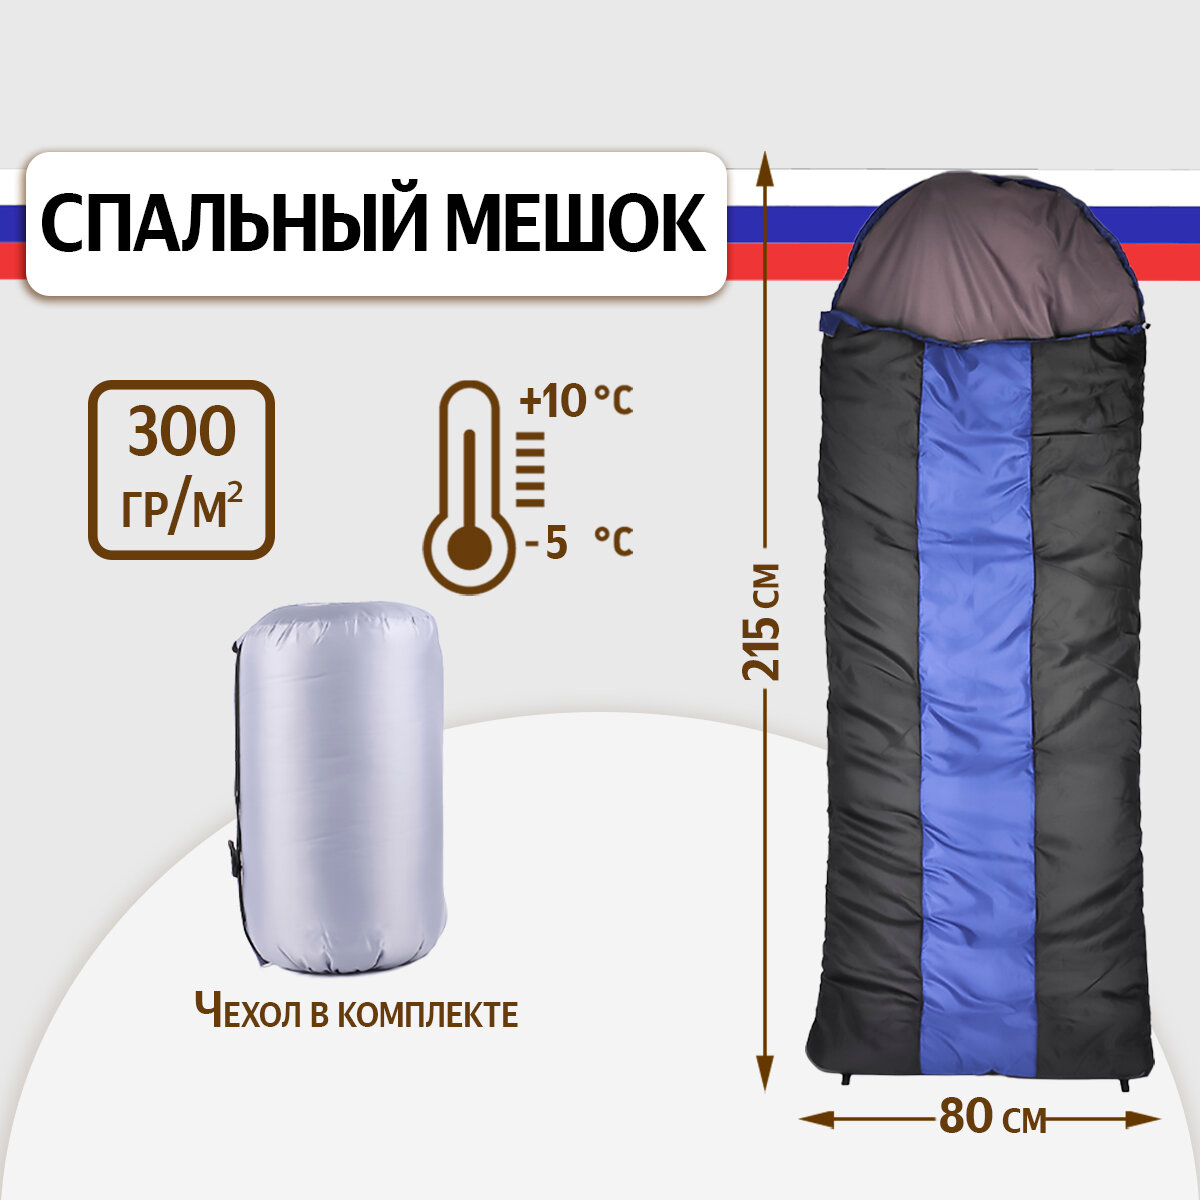 Спальный мешок SBX DREAM 300 туристический с подголовником 215 см, до -5 С, серый